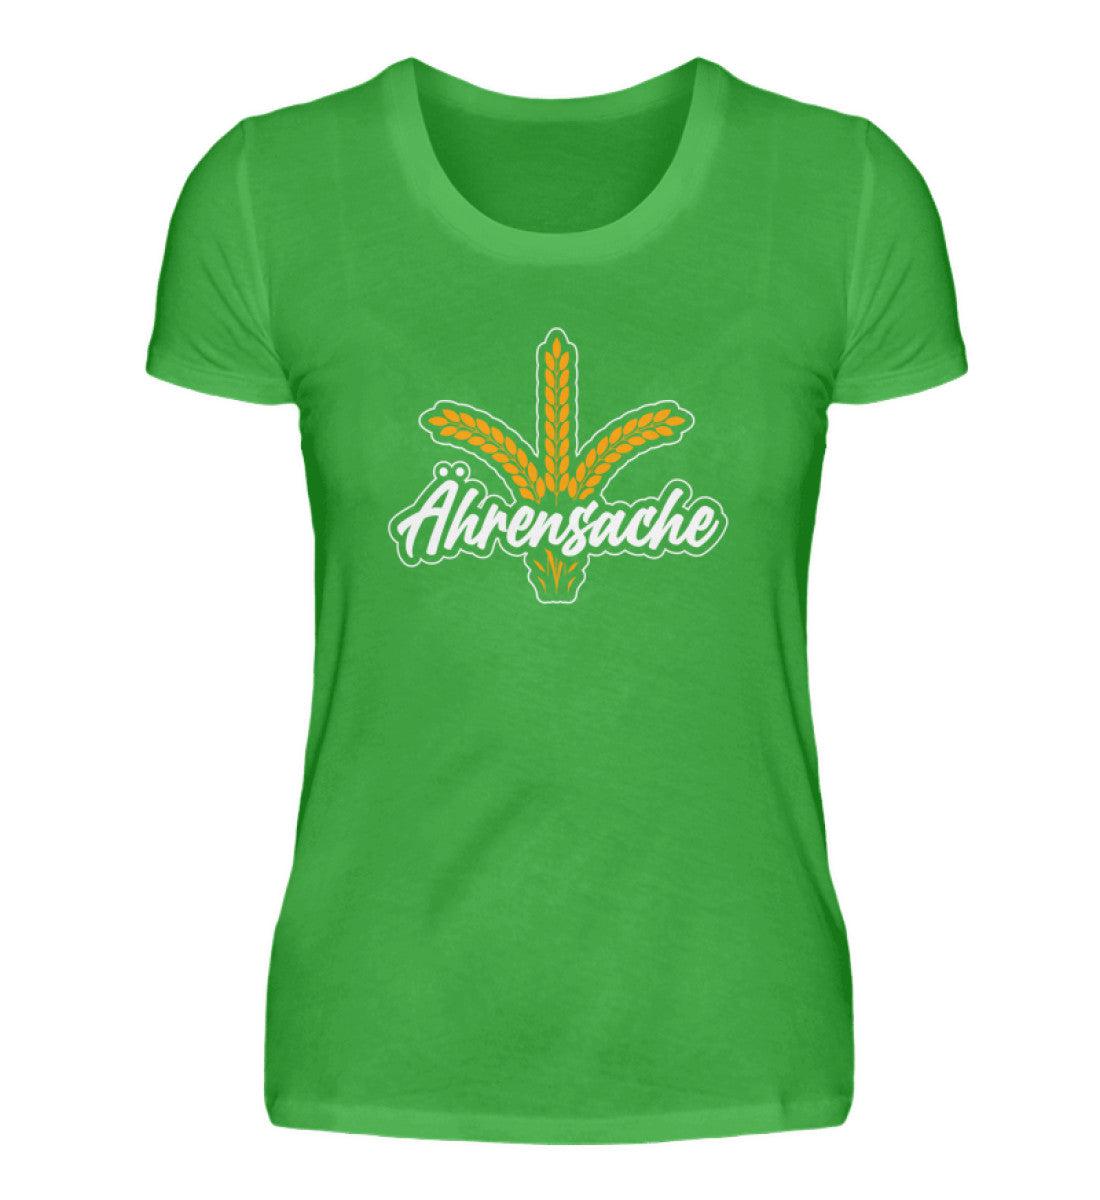 Ährensache · Damen T-Shirt-Damen Basic T-Shirt-Green Apple-S-Agrarstarz